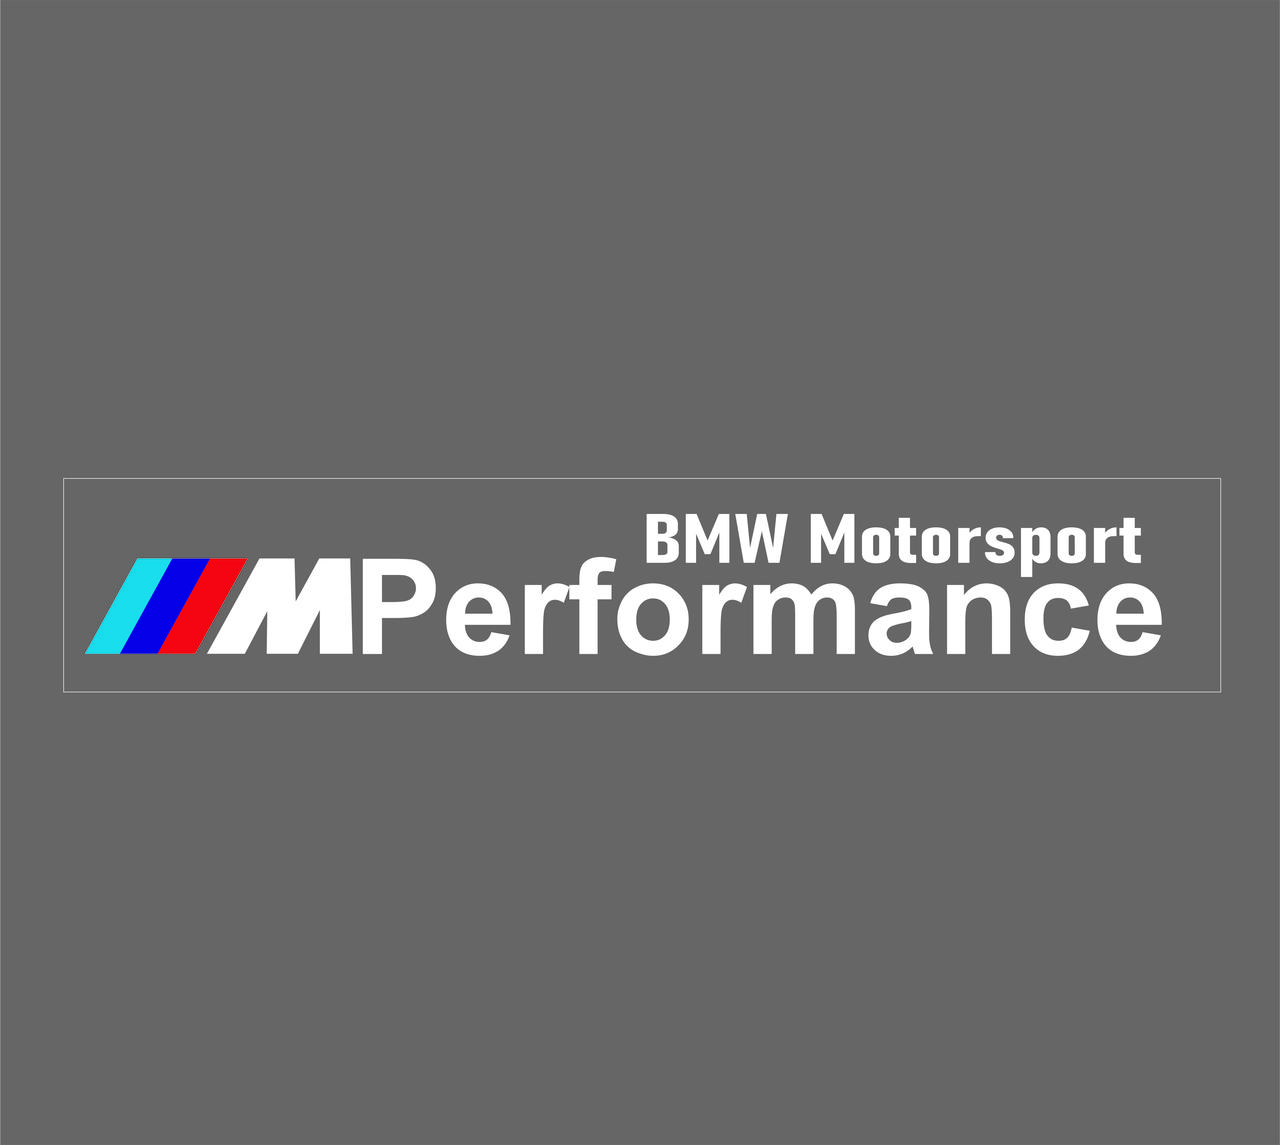 Наклейка на BMW ///Performance 400x52 мм біла